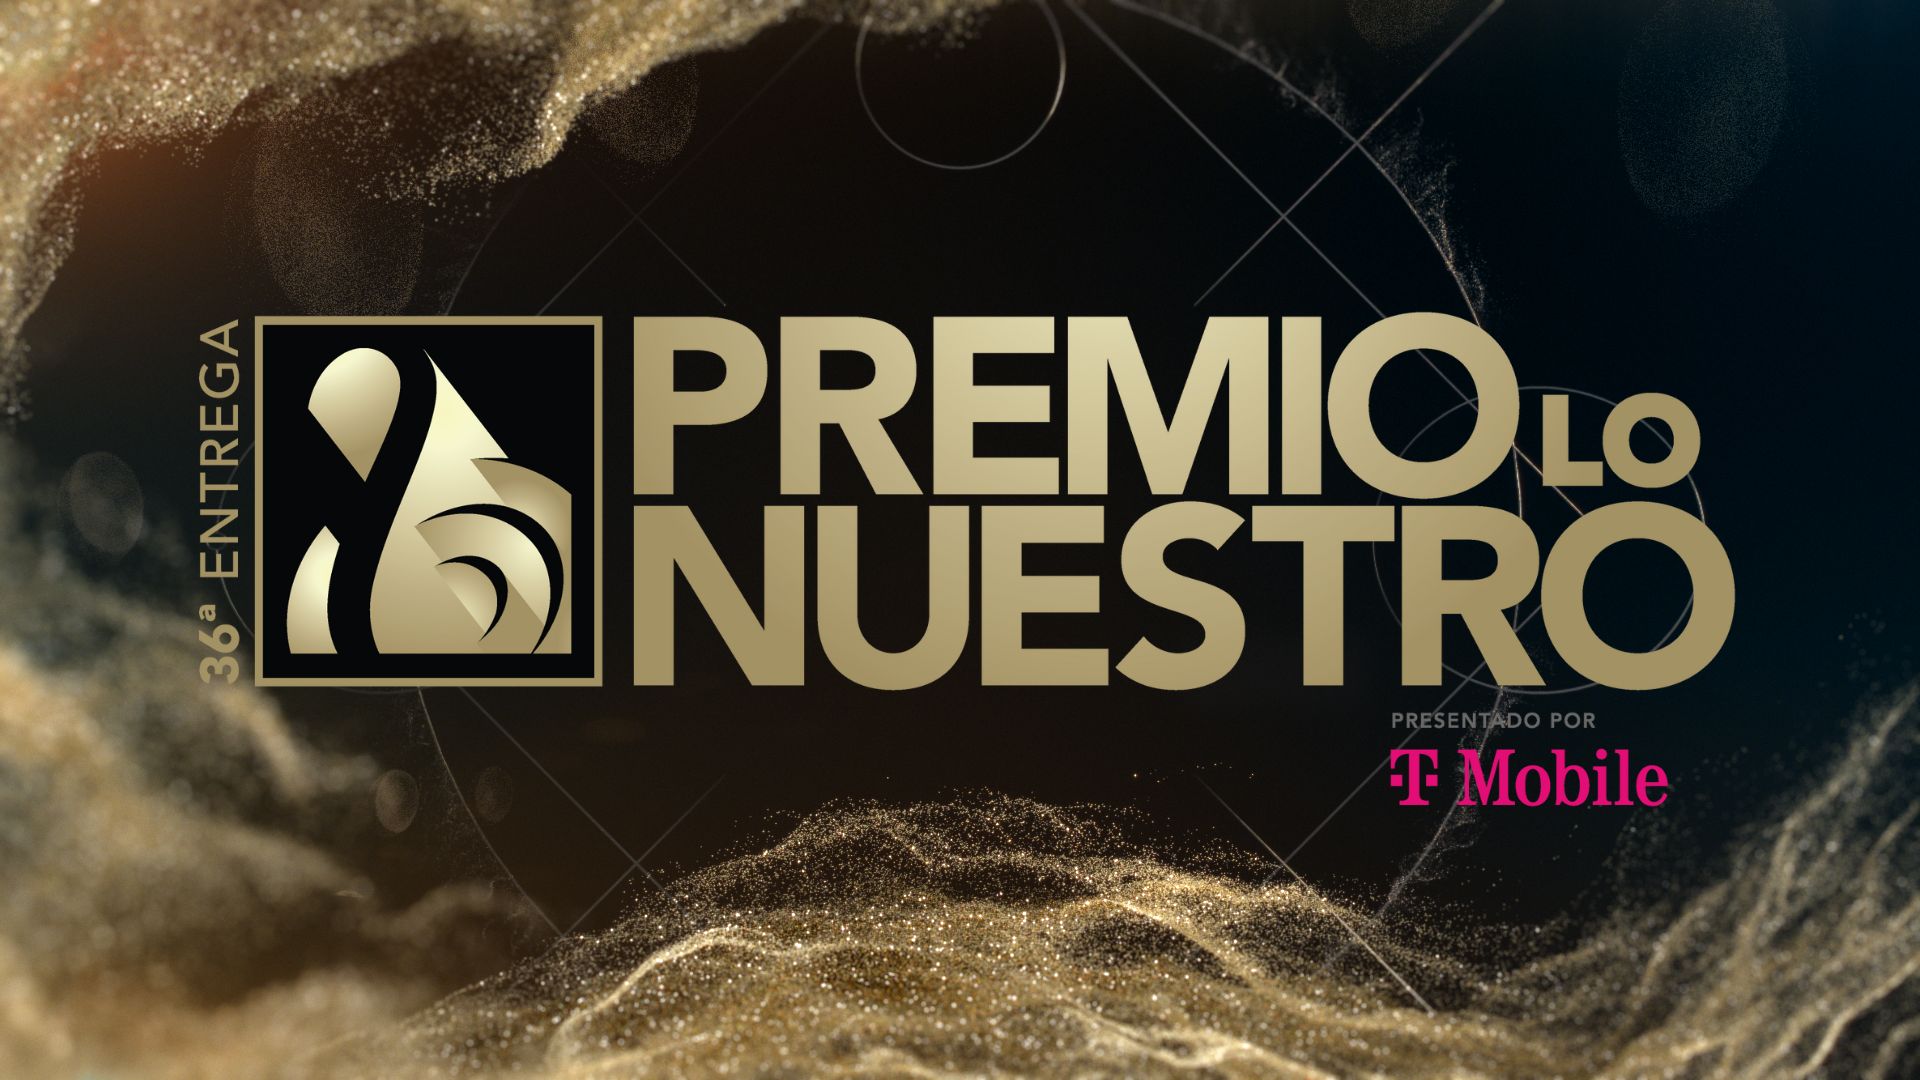 The 36th Annual Telecast of PREMIO LO NUESTRO Propels Univision to